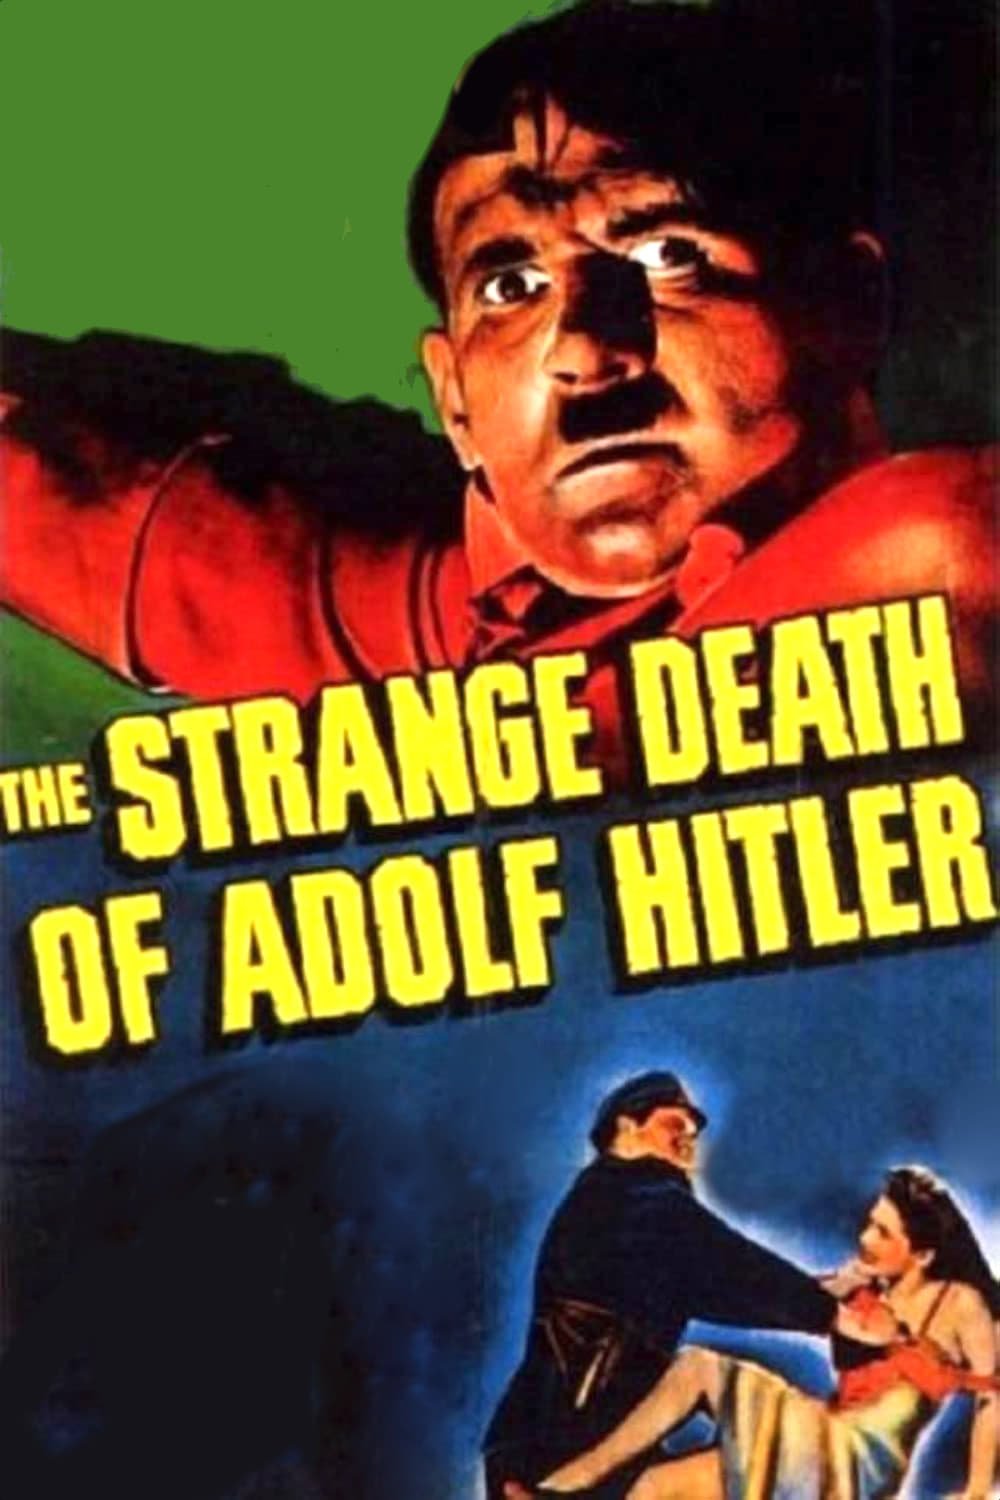 The Strange Death of Adolf Hitler (1943)